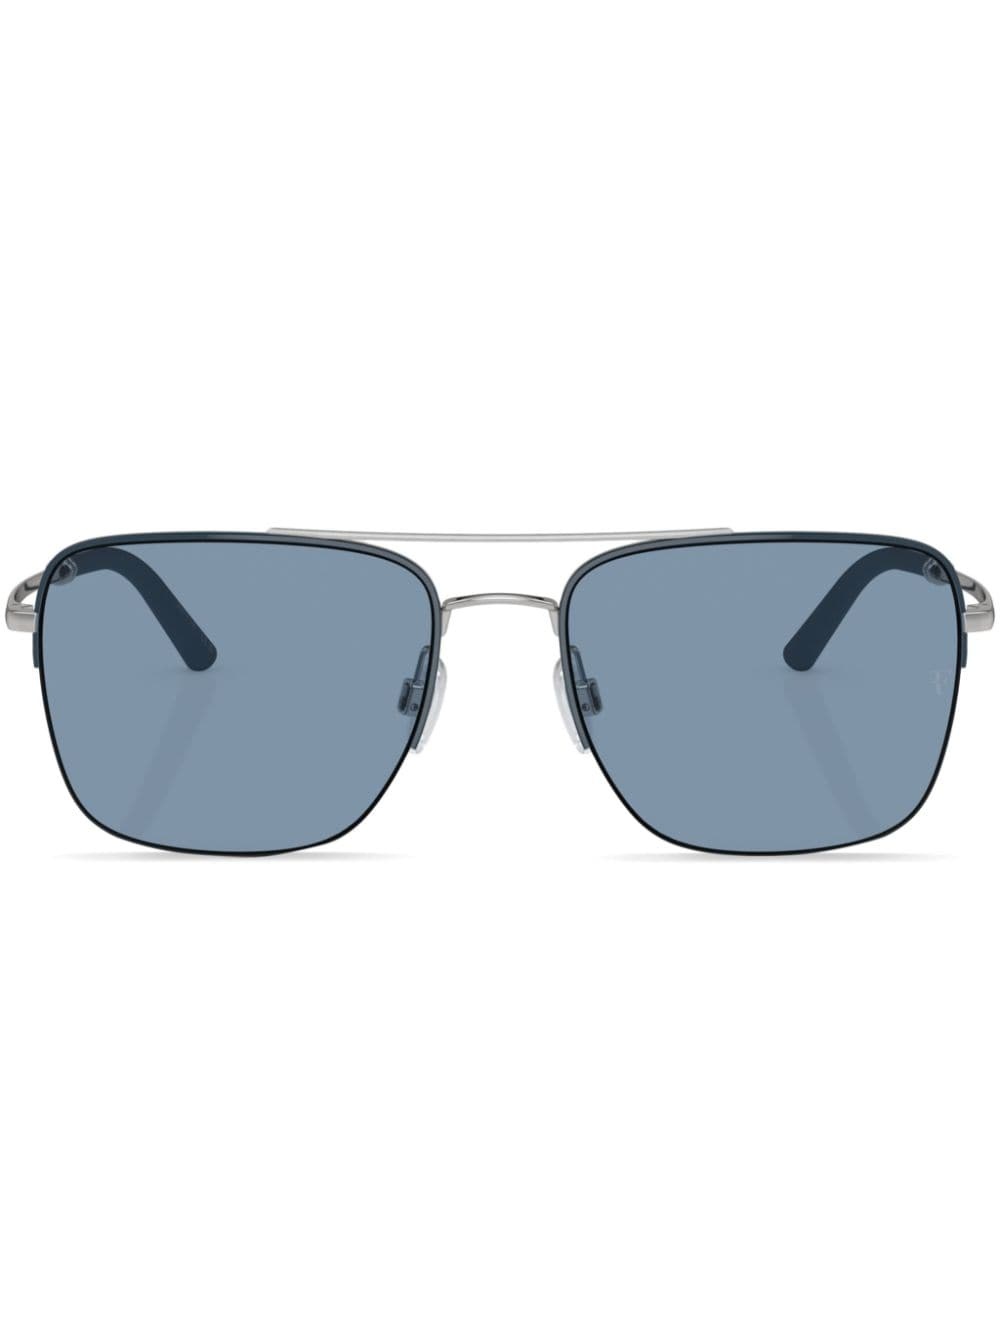 R-2 square-frame sunglasses - 1